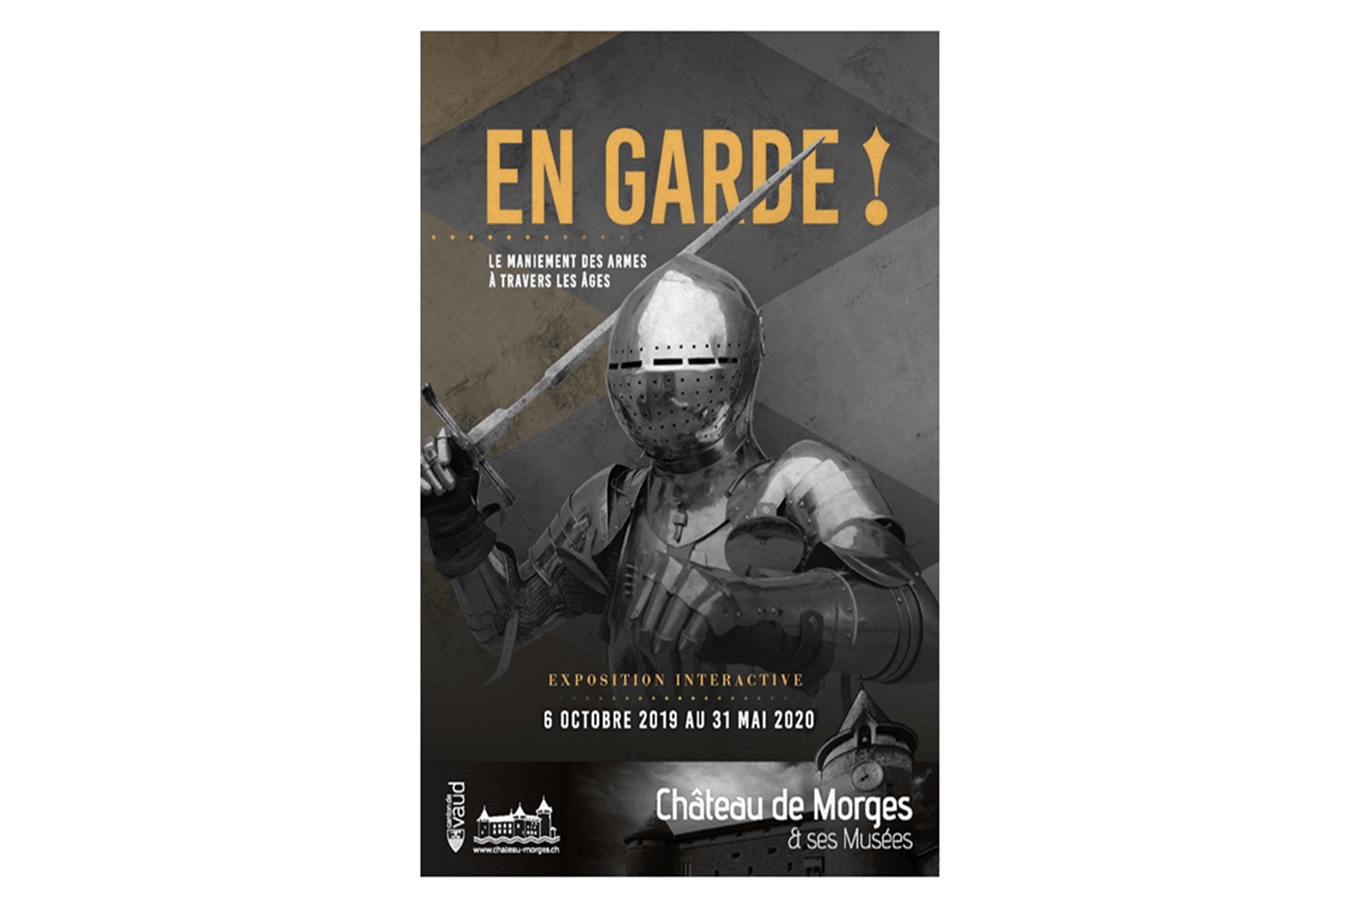 Affiche de l'exposition "En Garde!" représentant un soldat en armure brandissant une épée